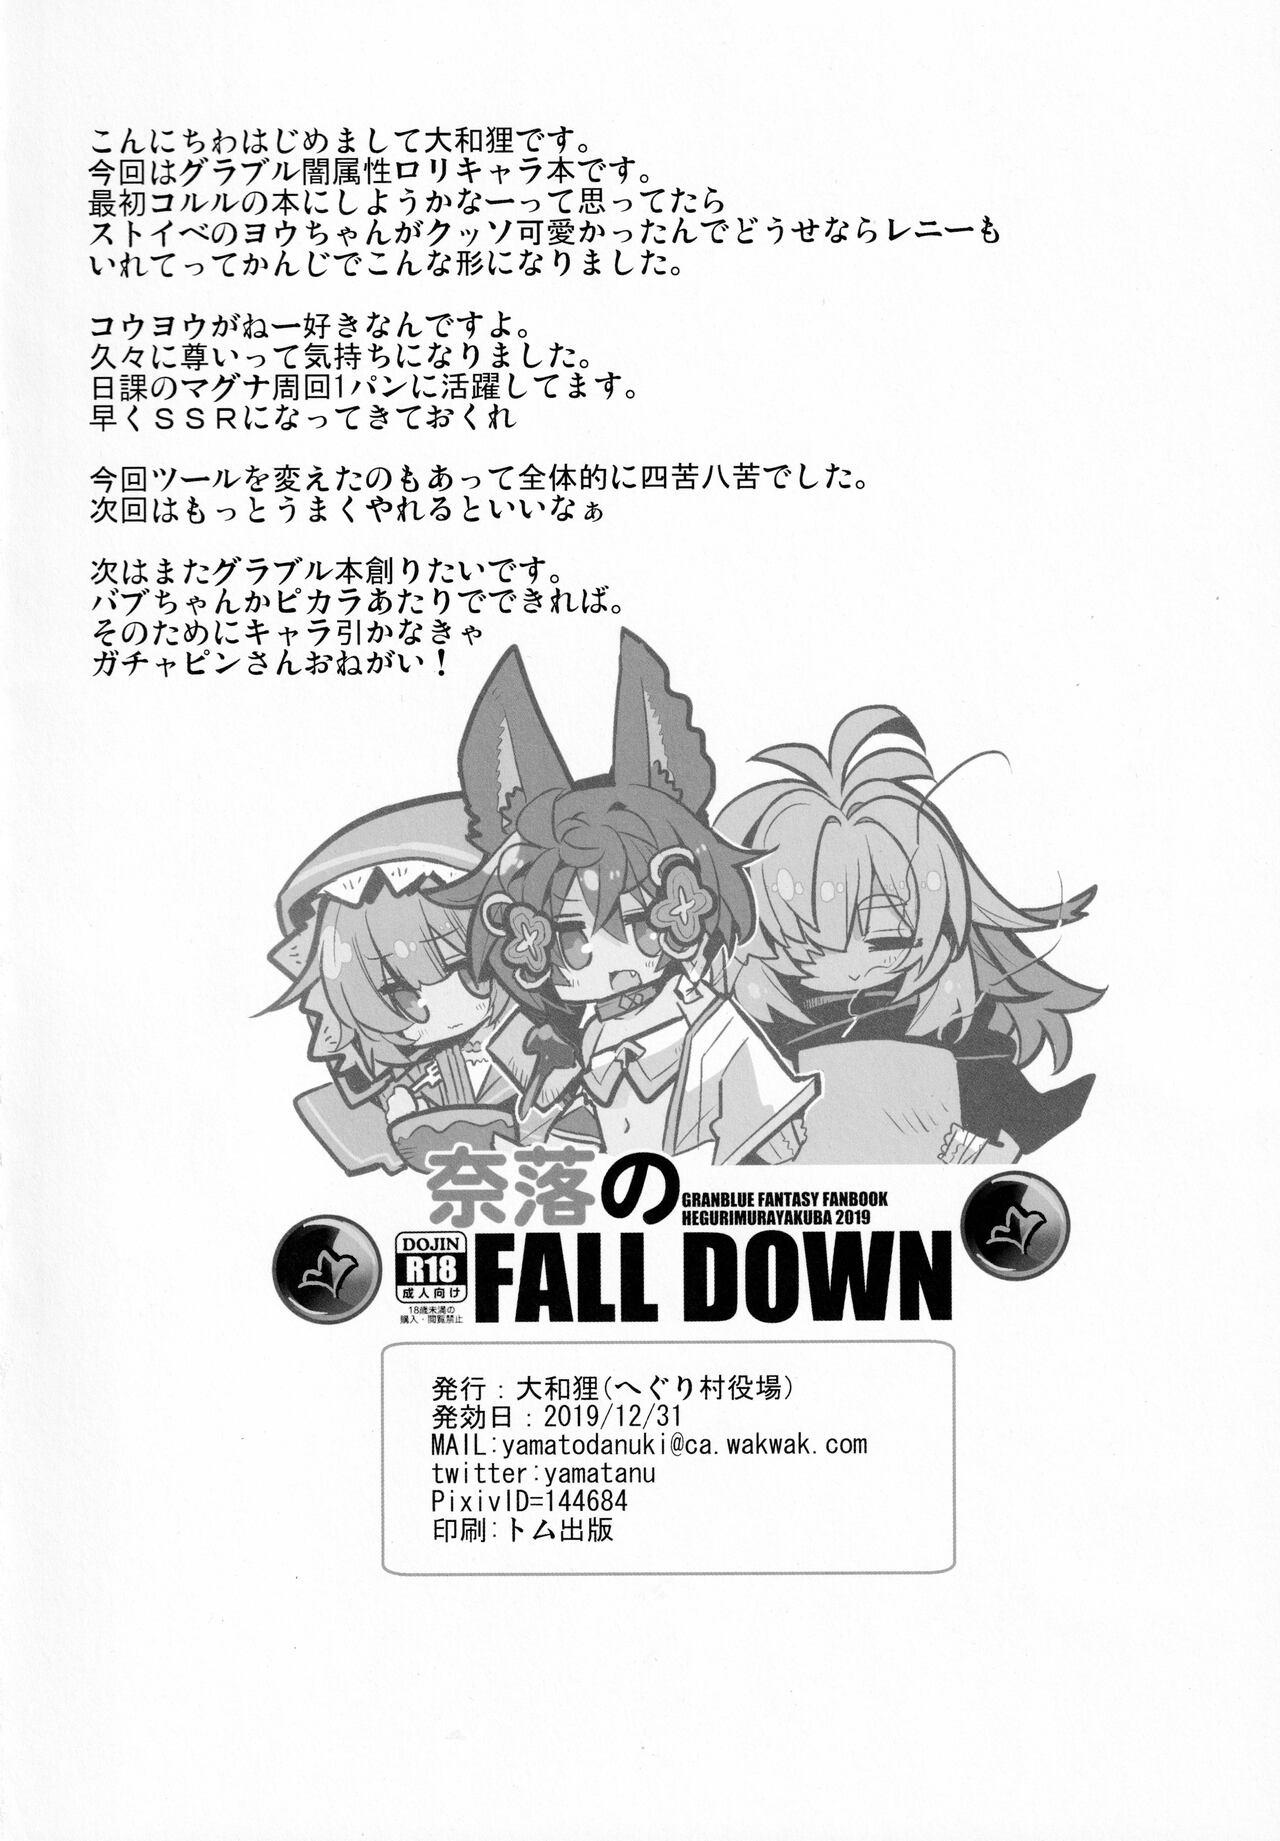 Naraku no Fall Down 24